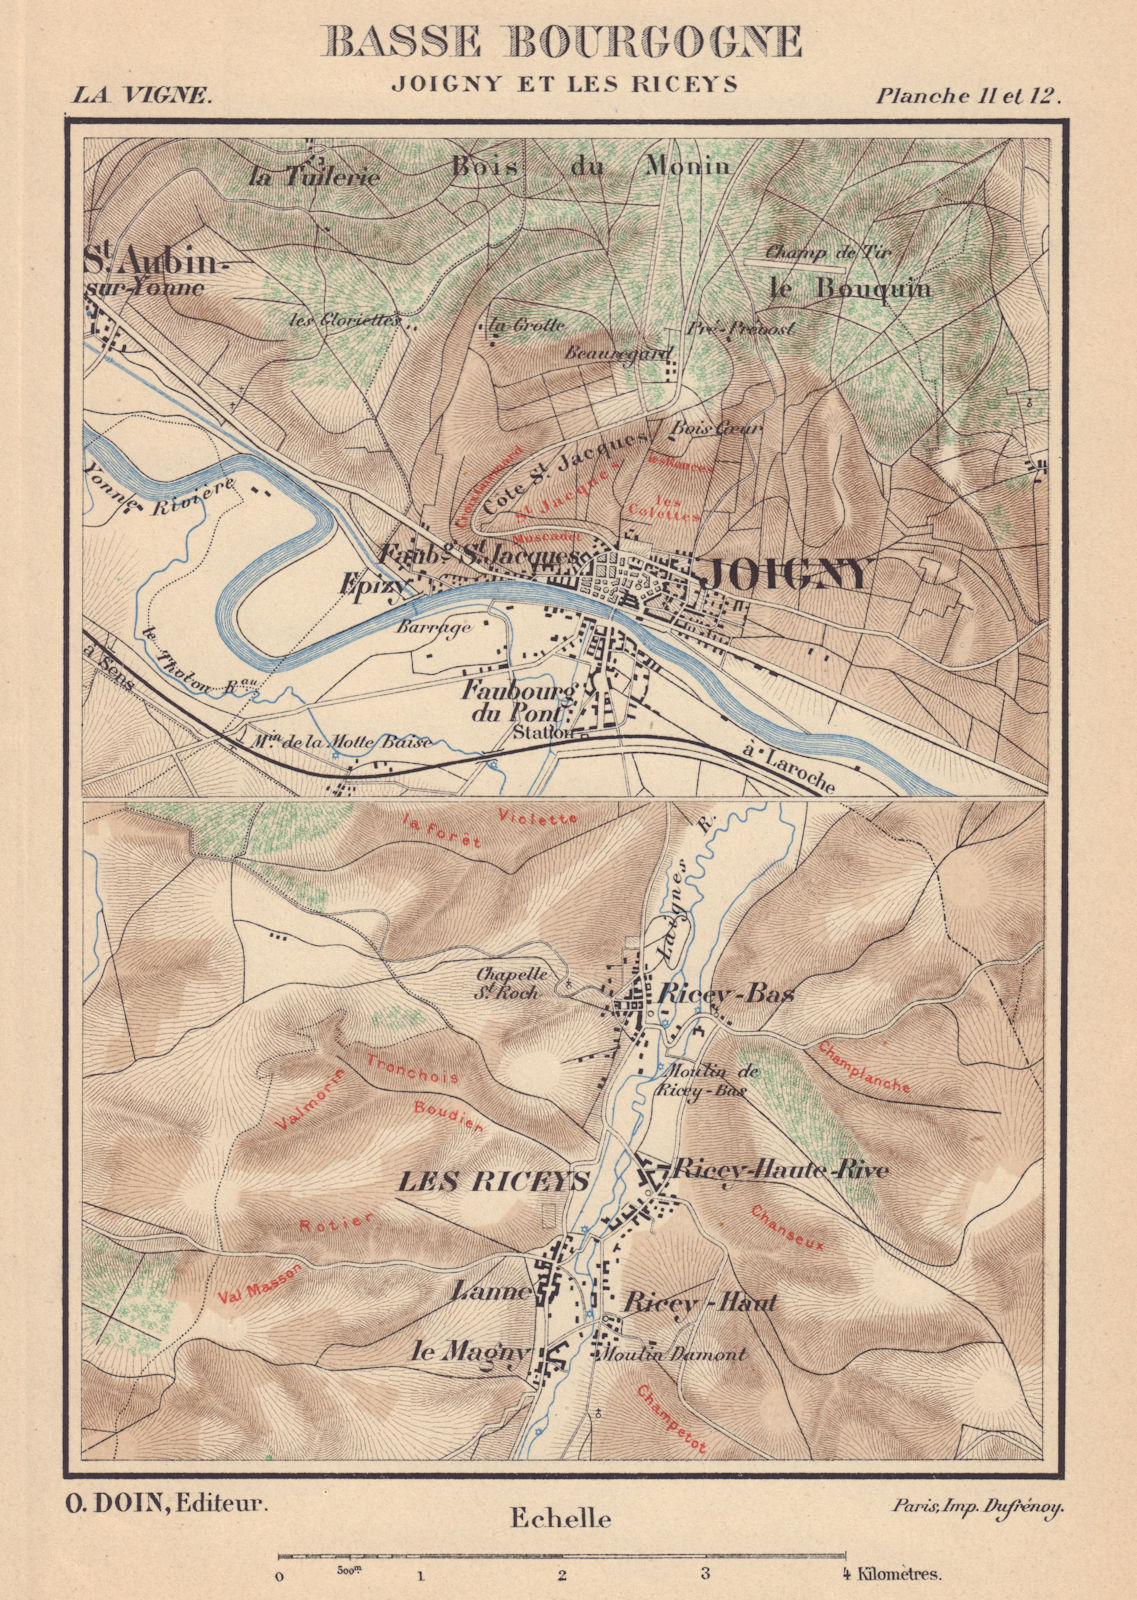 Basse Bourgogne - Joigny et les Riceys. Burgundy wine map. HAUSERMANN 1901